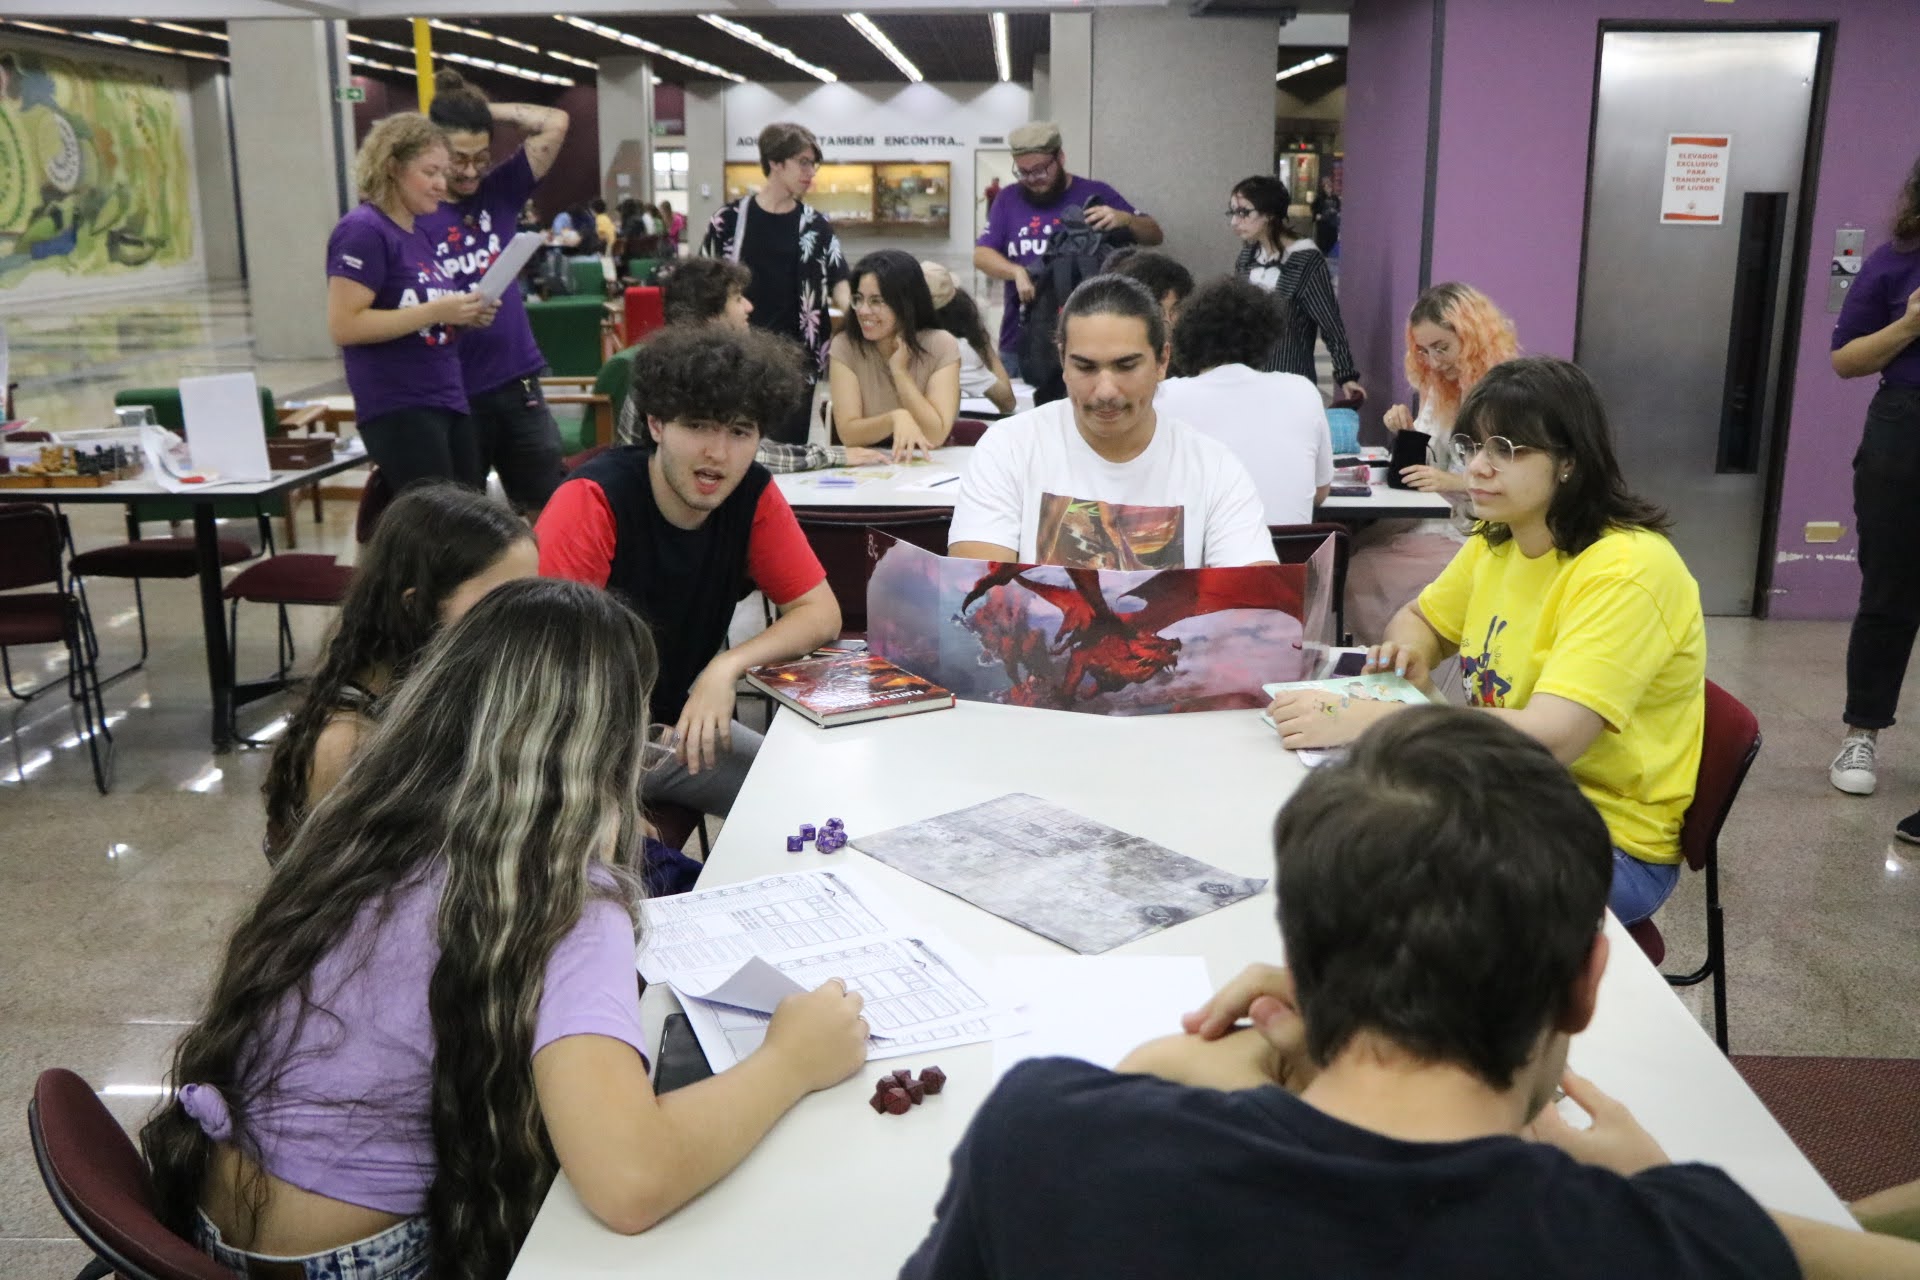 Oficina de RPG promove interação e criatividade entre estudantes no Festival Universitário